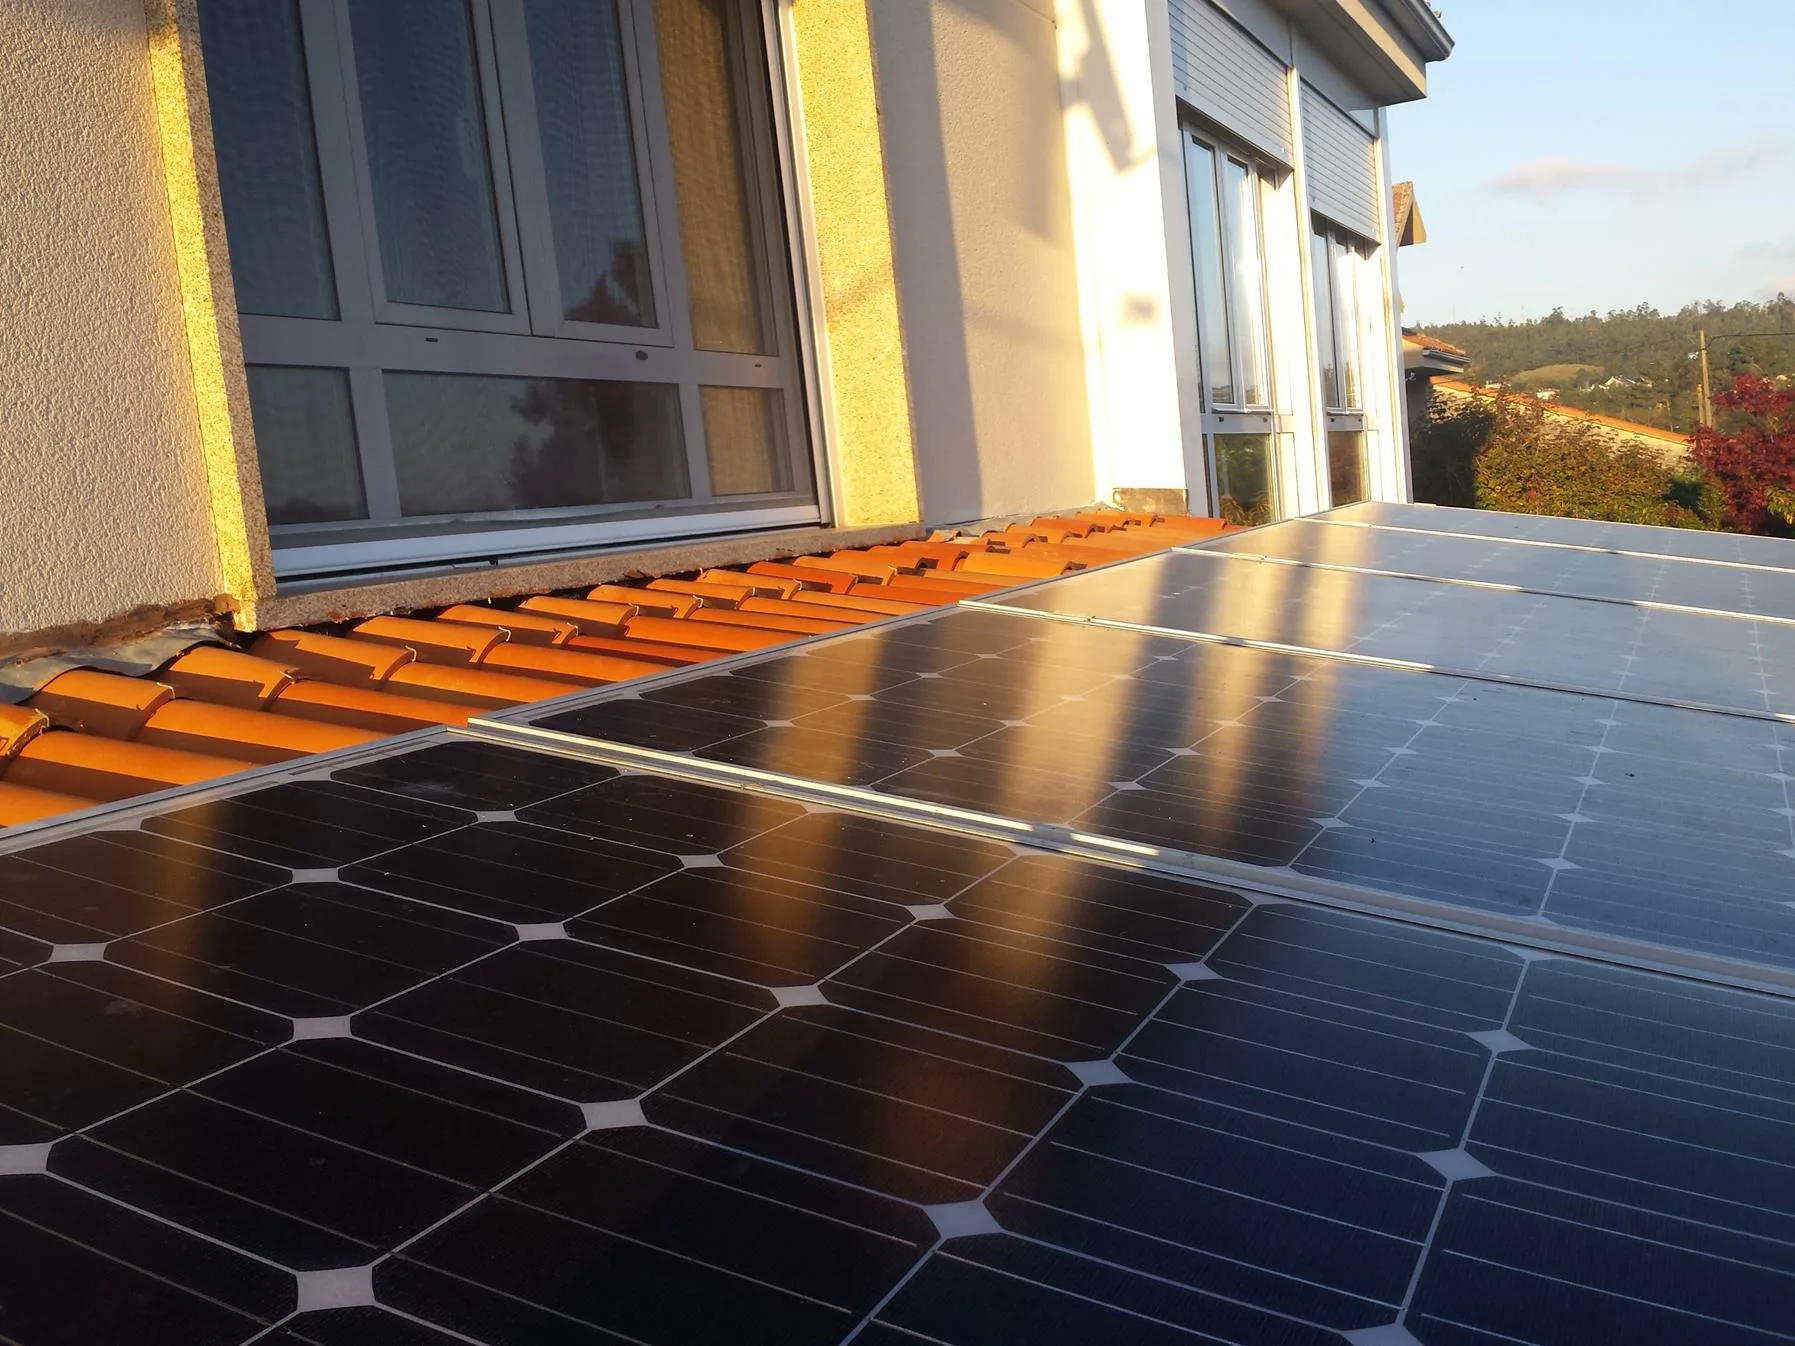 Instalación solar fotovoltaica en vivienda unifamiliar en Orihuela Costa